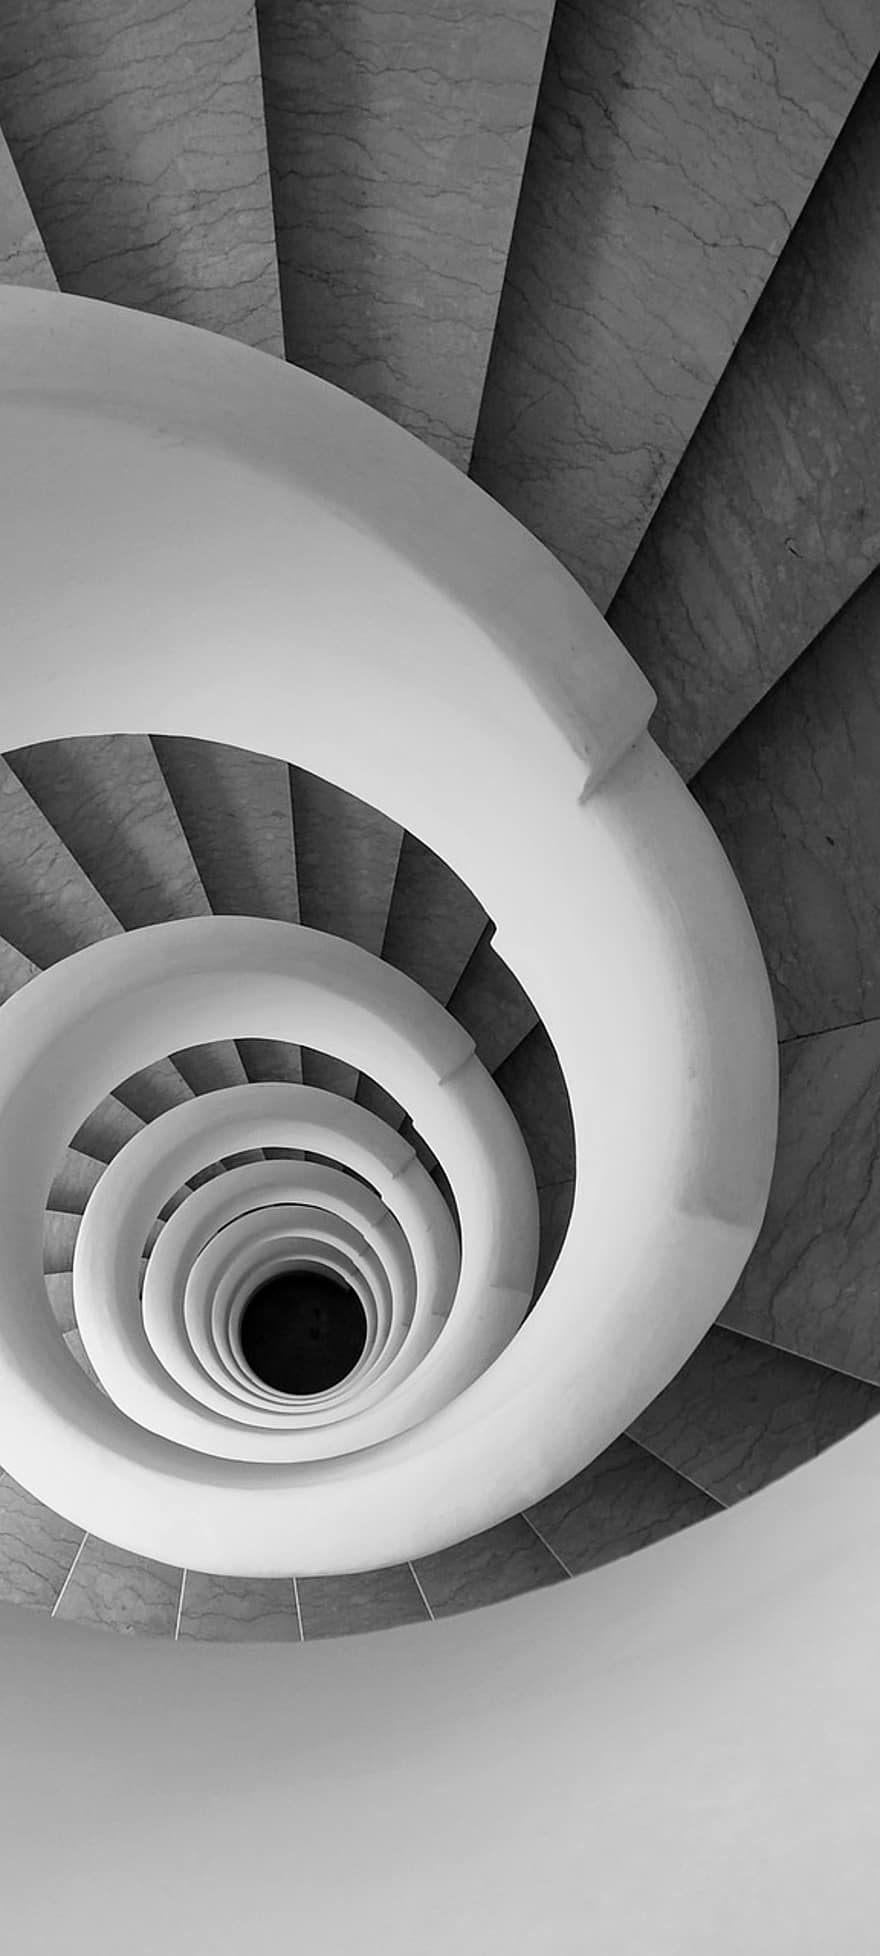 točité schodiště, schodiště, spirála, architektura, uvnitř, design, moderní, abstraktní, křivka, domácí místnost, kruh